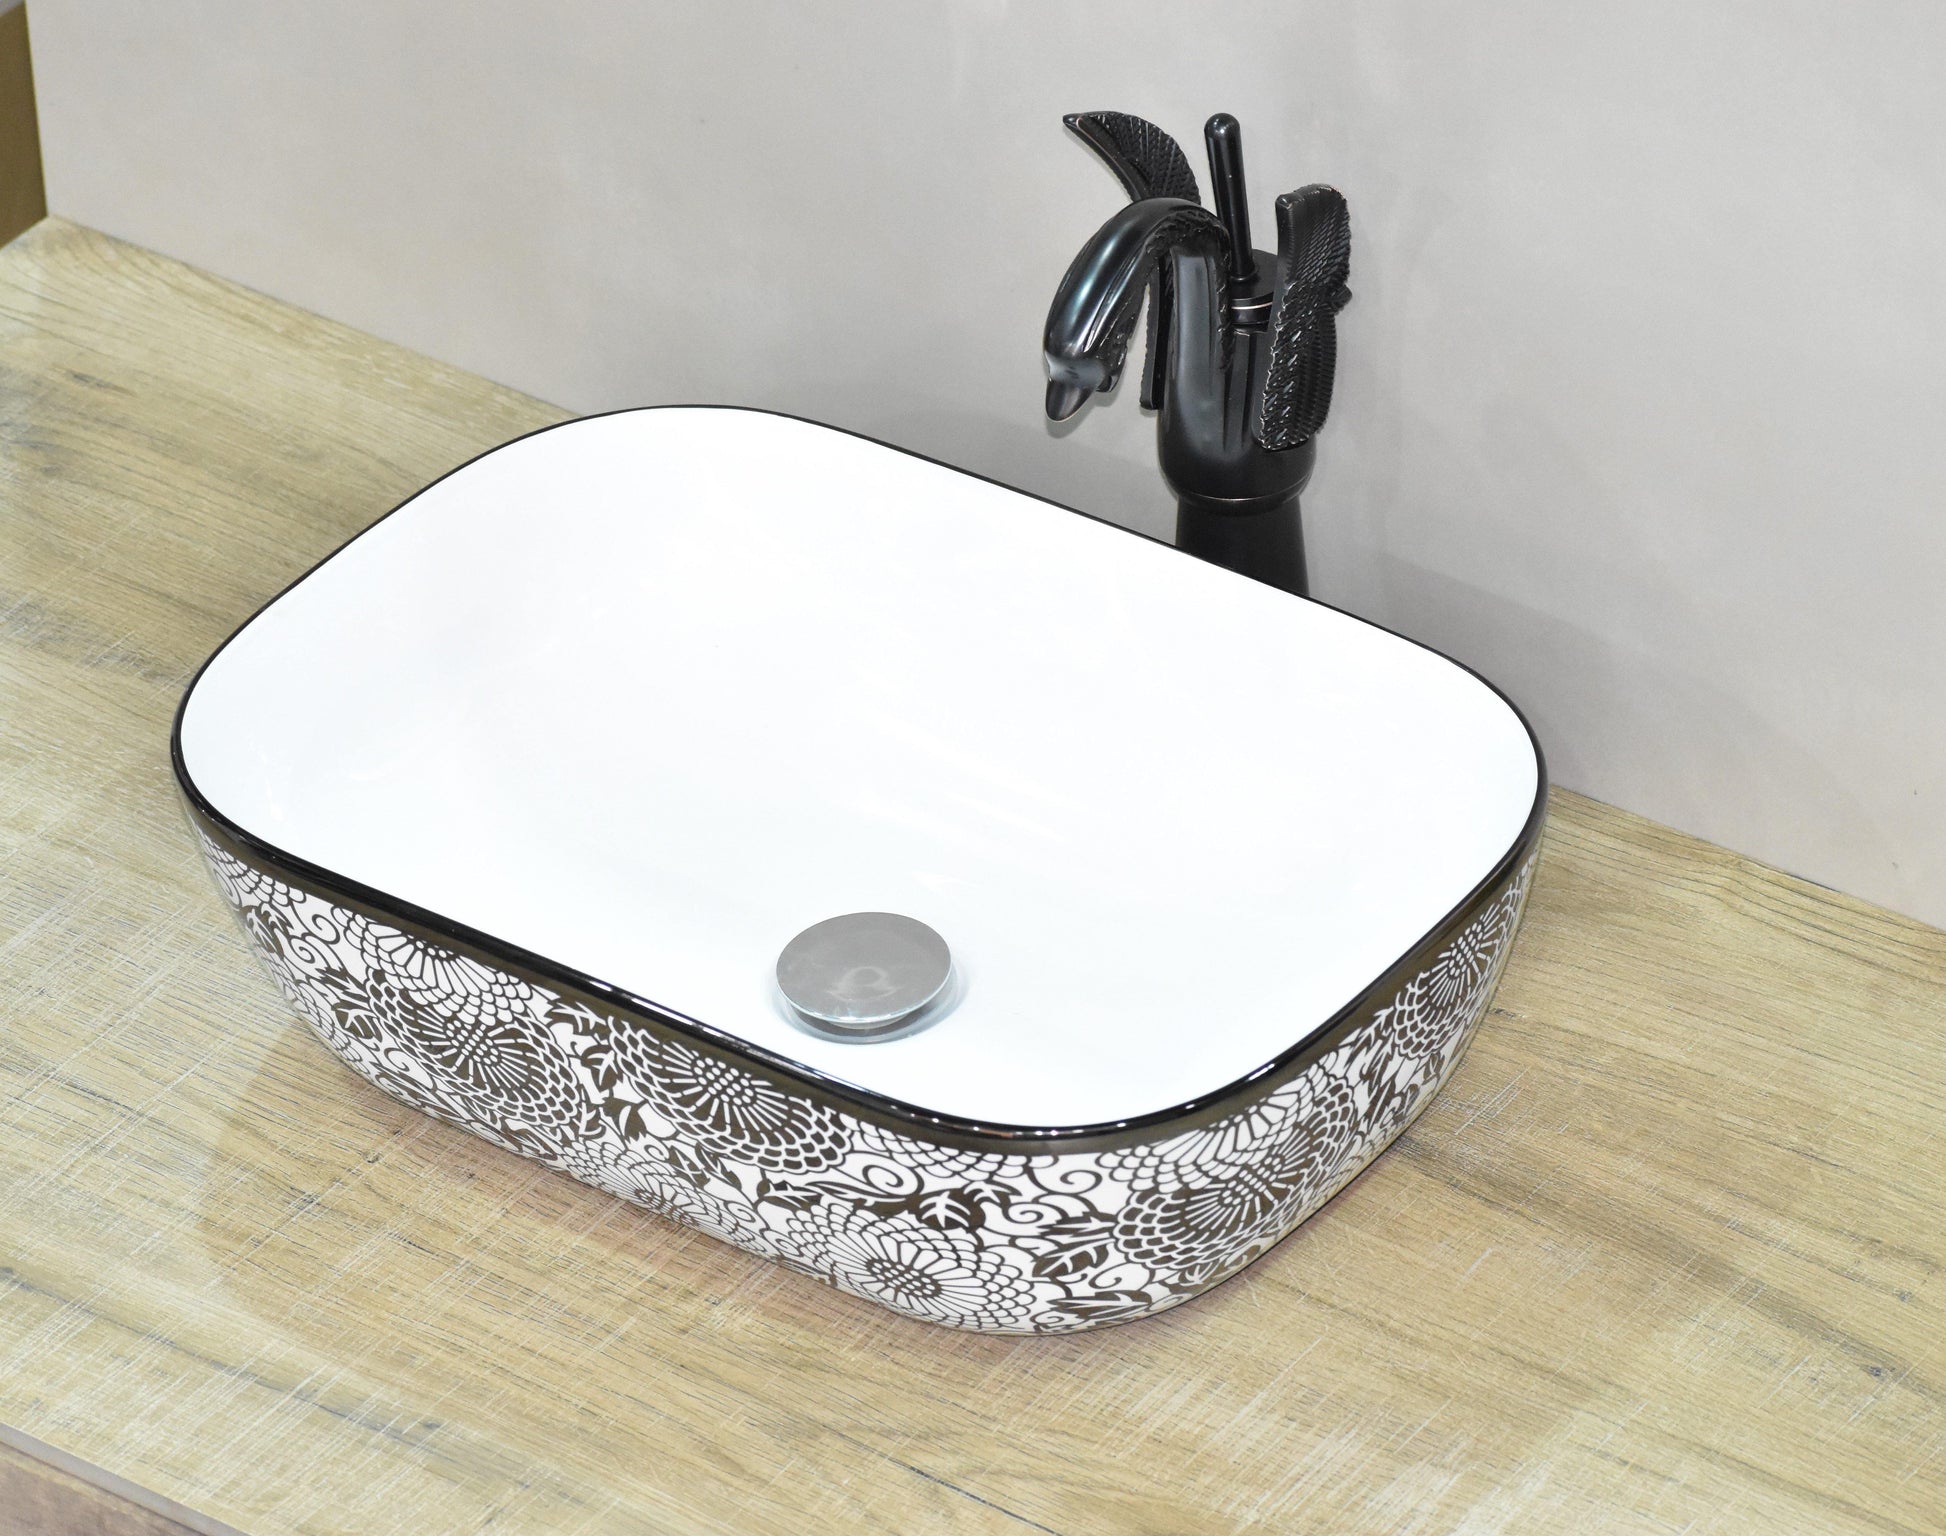 Designer Ceramic Wash Basin/Vessel Sink/Over or Above Counter Top Wash Basin for Bathroom Rectangle Shape 18 x 13 x 5.5 Inch Black White - Bath Outlet